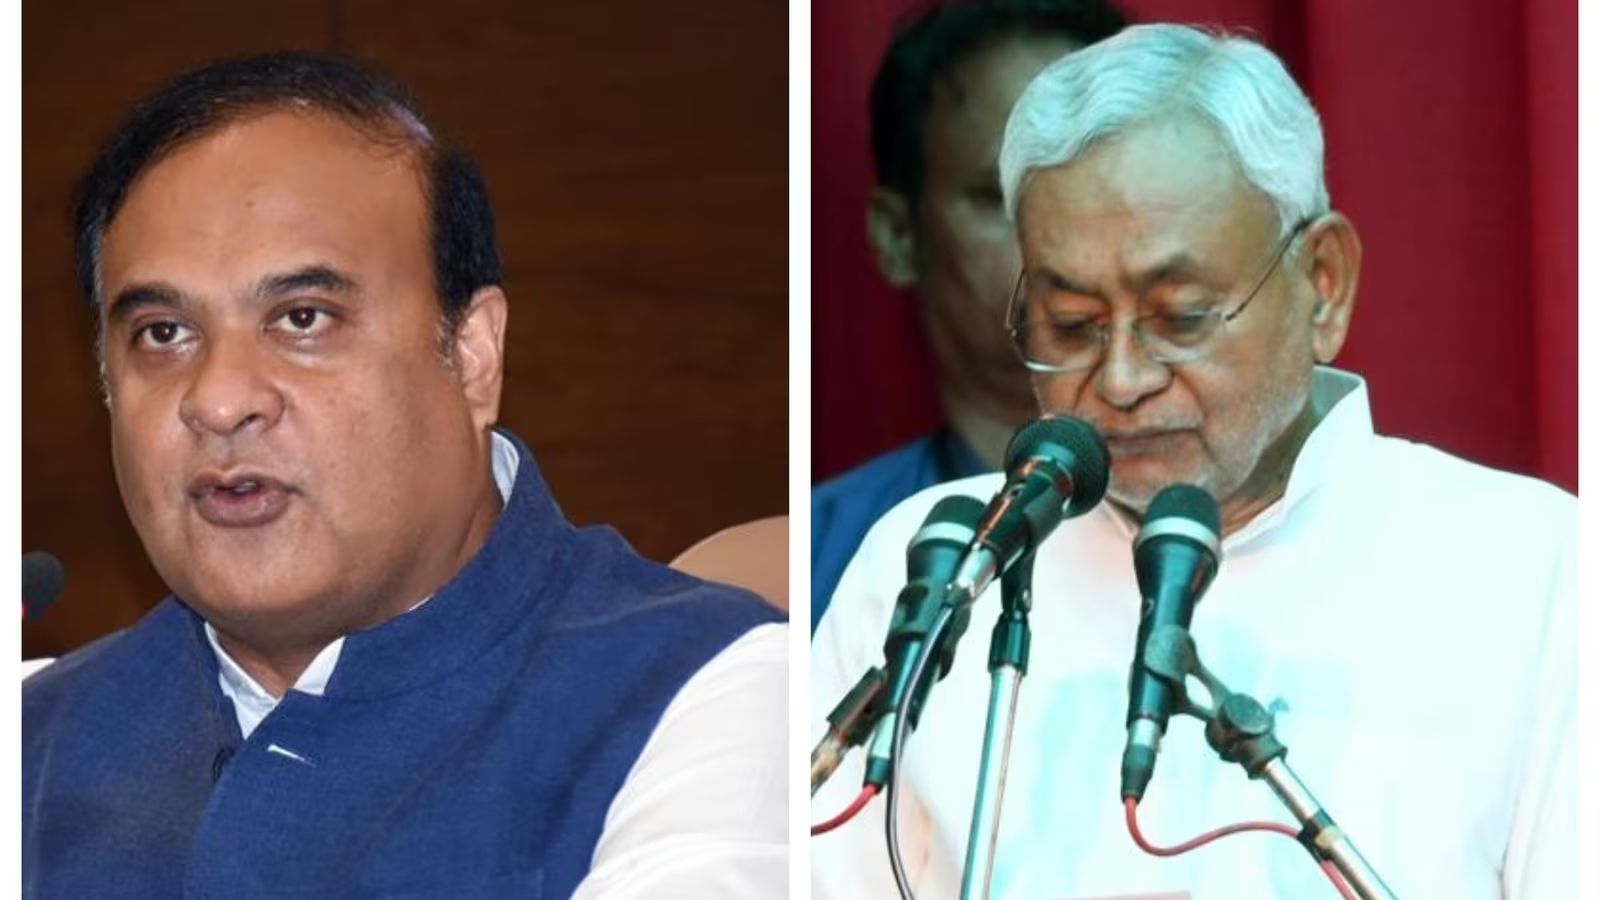 भाजपा नेताओं ने विवादास्पद जनसंख्या नियंत्रण टिप्पणी पर बिहार के मुख्यमंत्री नीतीश कुमार को हटाने की करी मांग